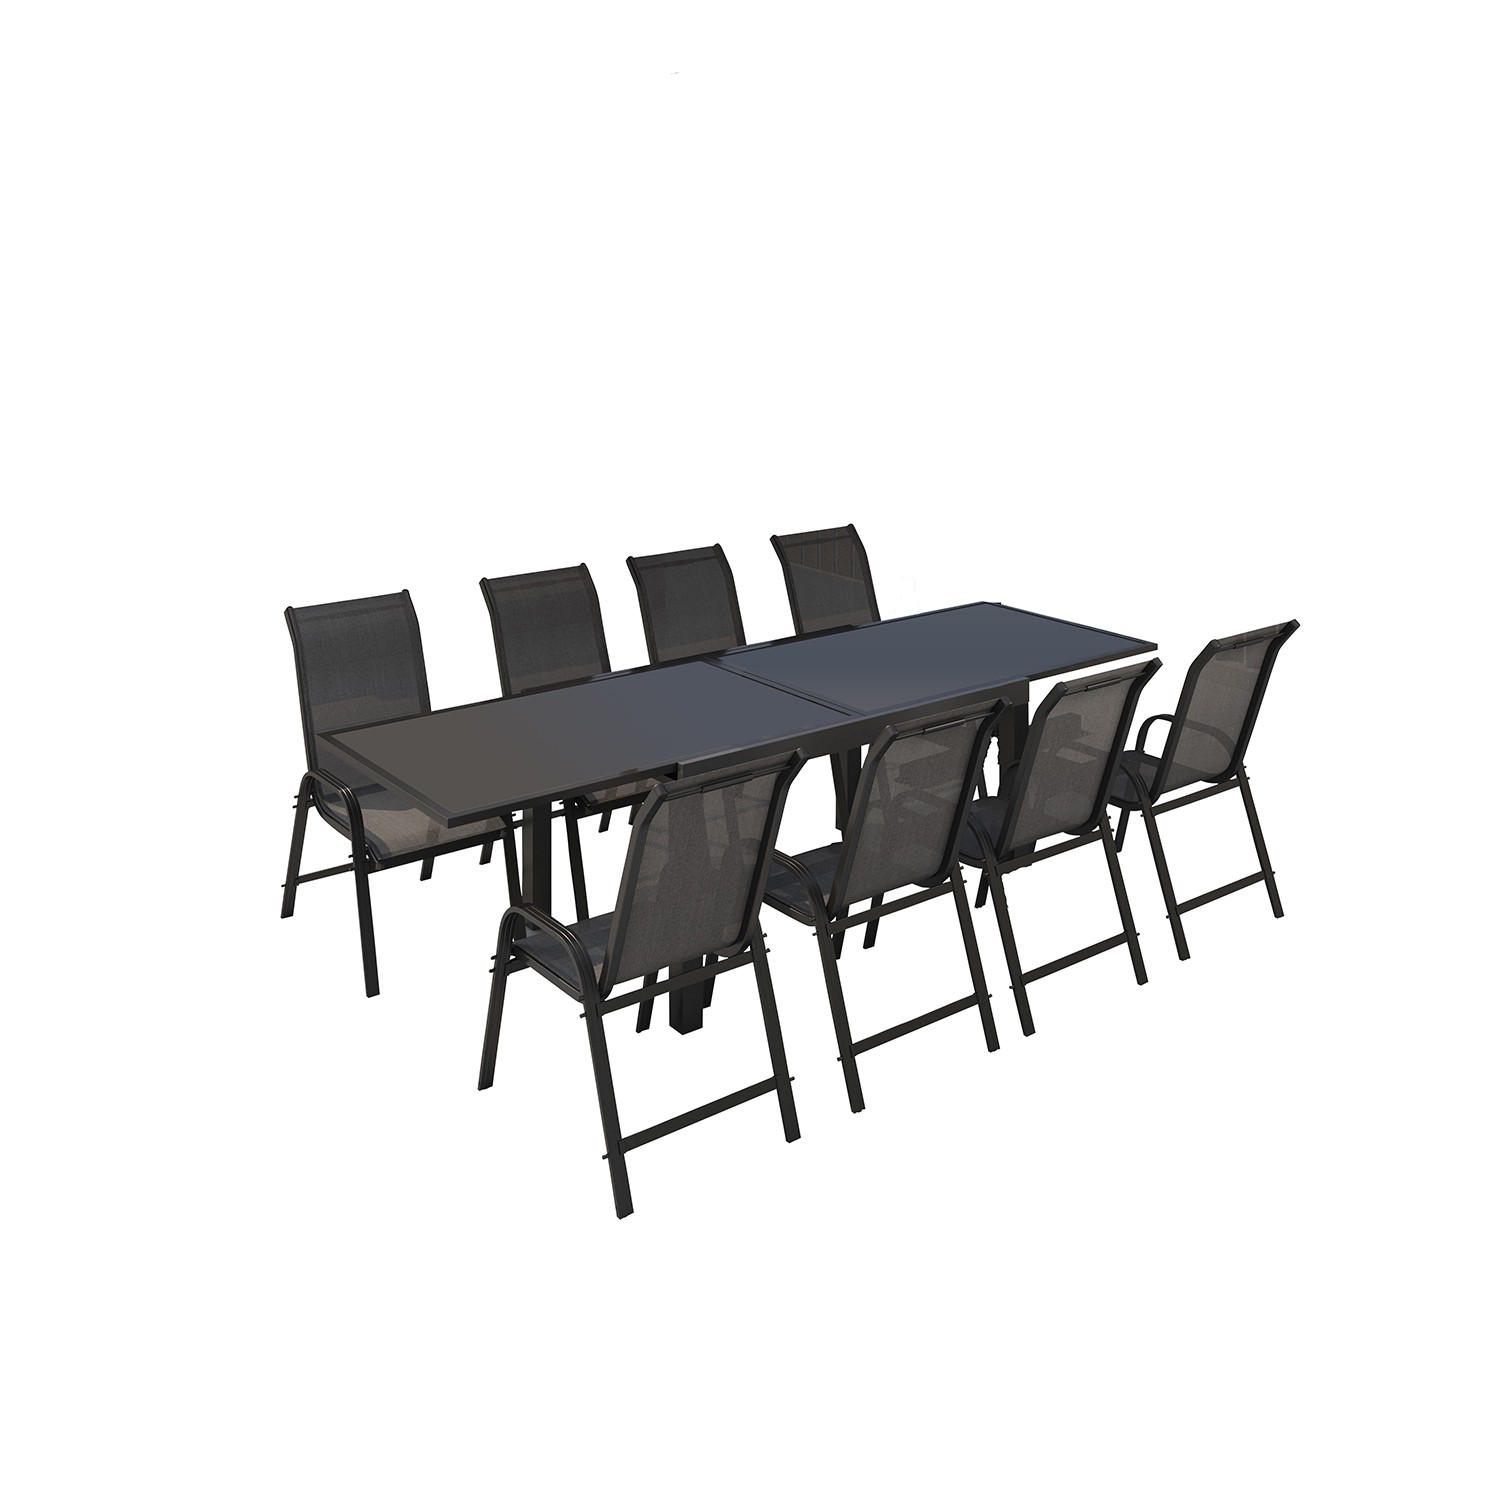 Table de jardin 8 personnes en aluminium noir